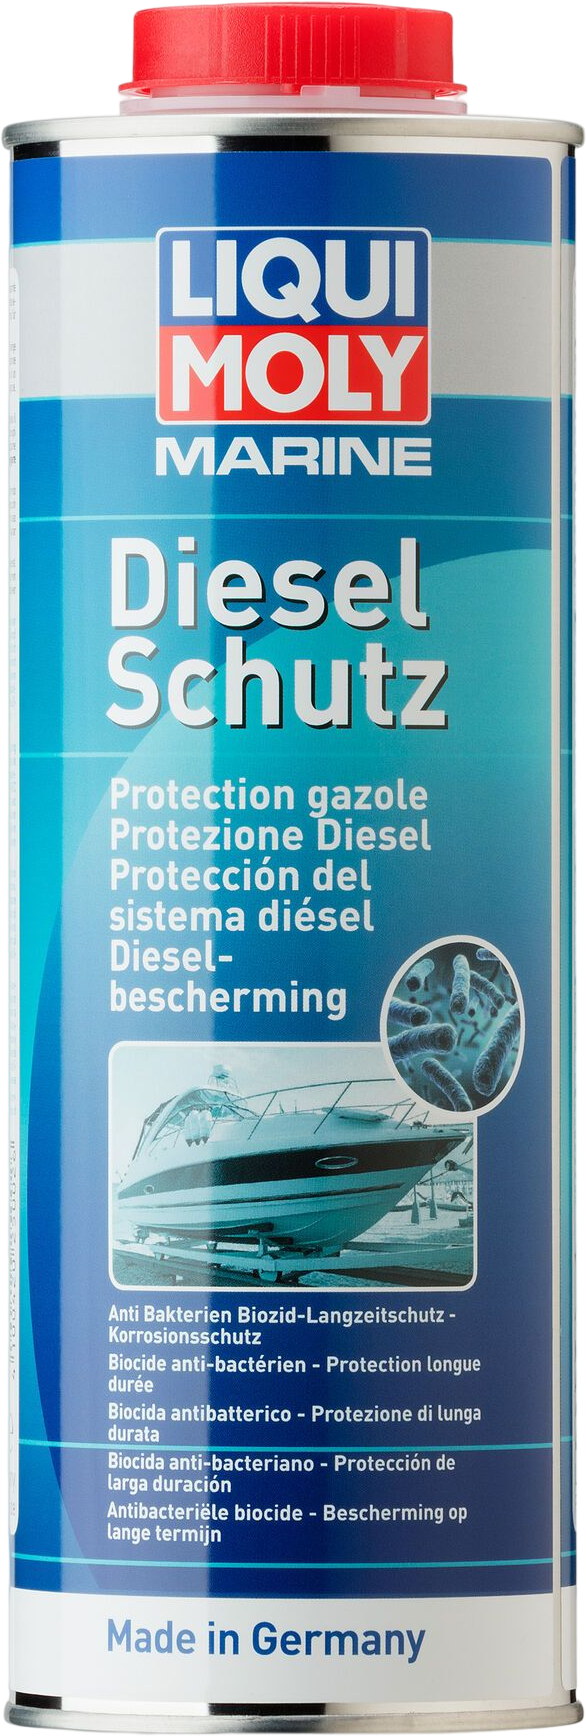 Liqui Moly Marine Dieselbescherming, 6 x 1 lt detail 2